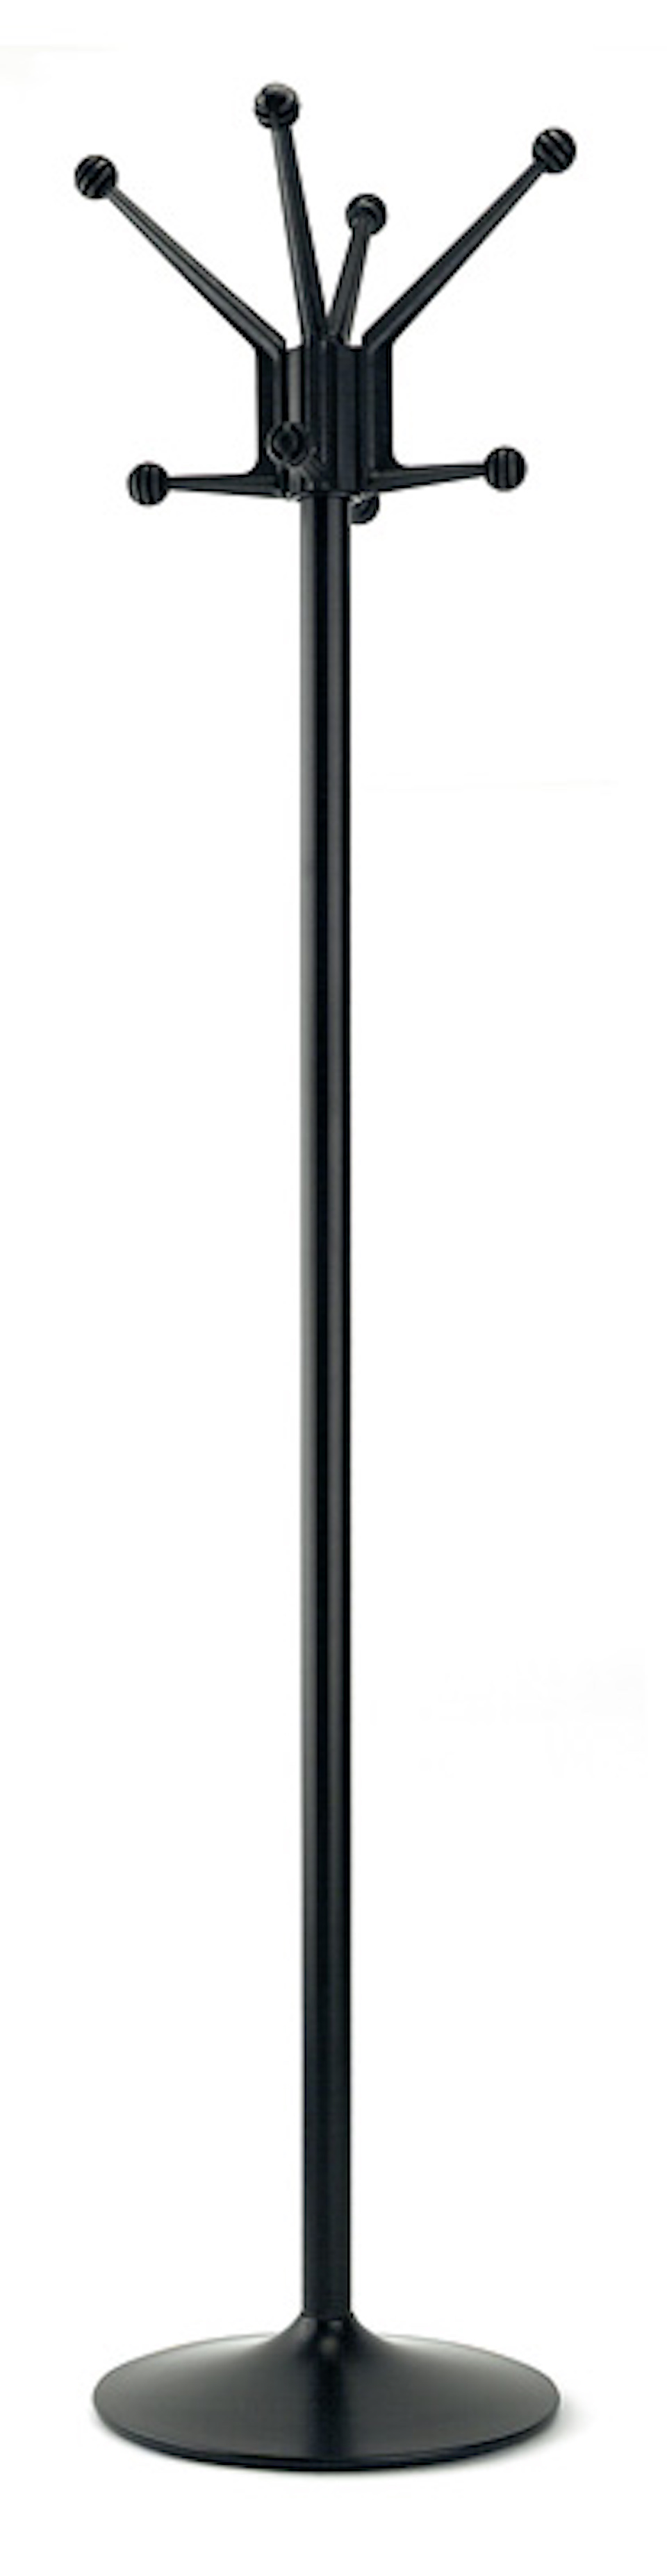 Freistehender Garderobenständer mit 8 Haken | Lackierter Stahl | Höhe 178cm | Schwarz